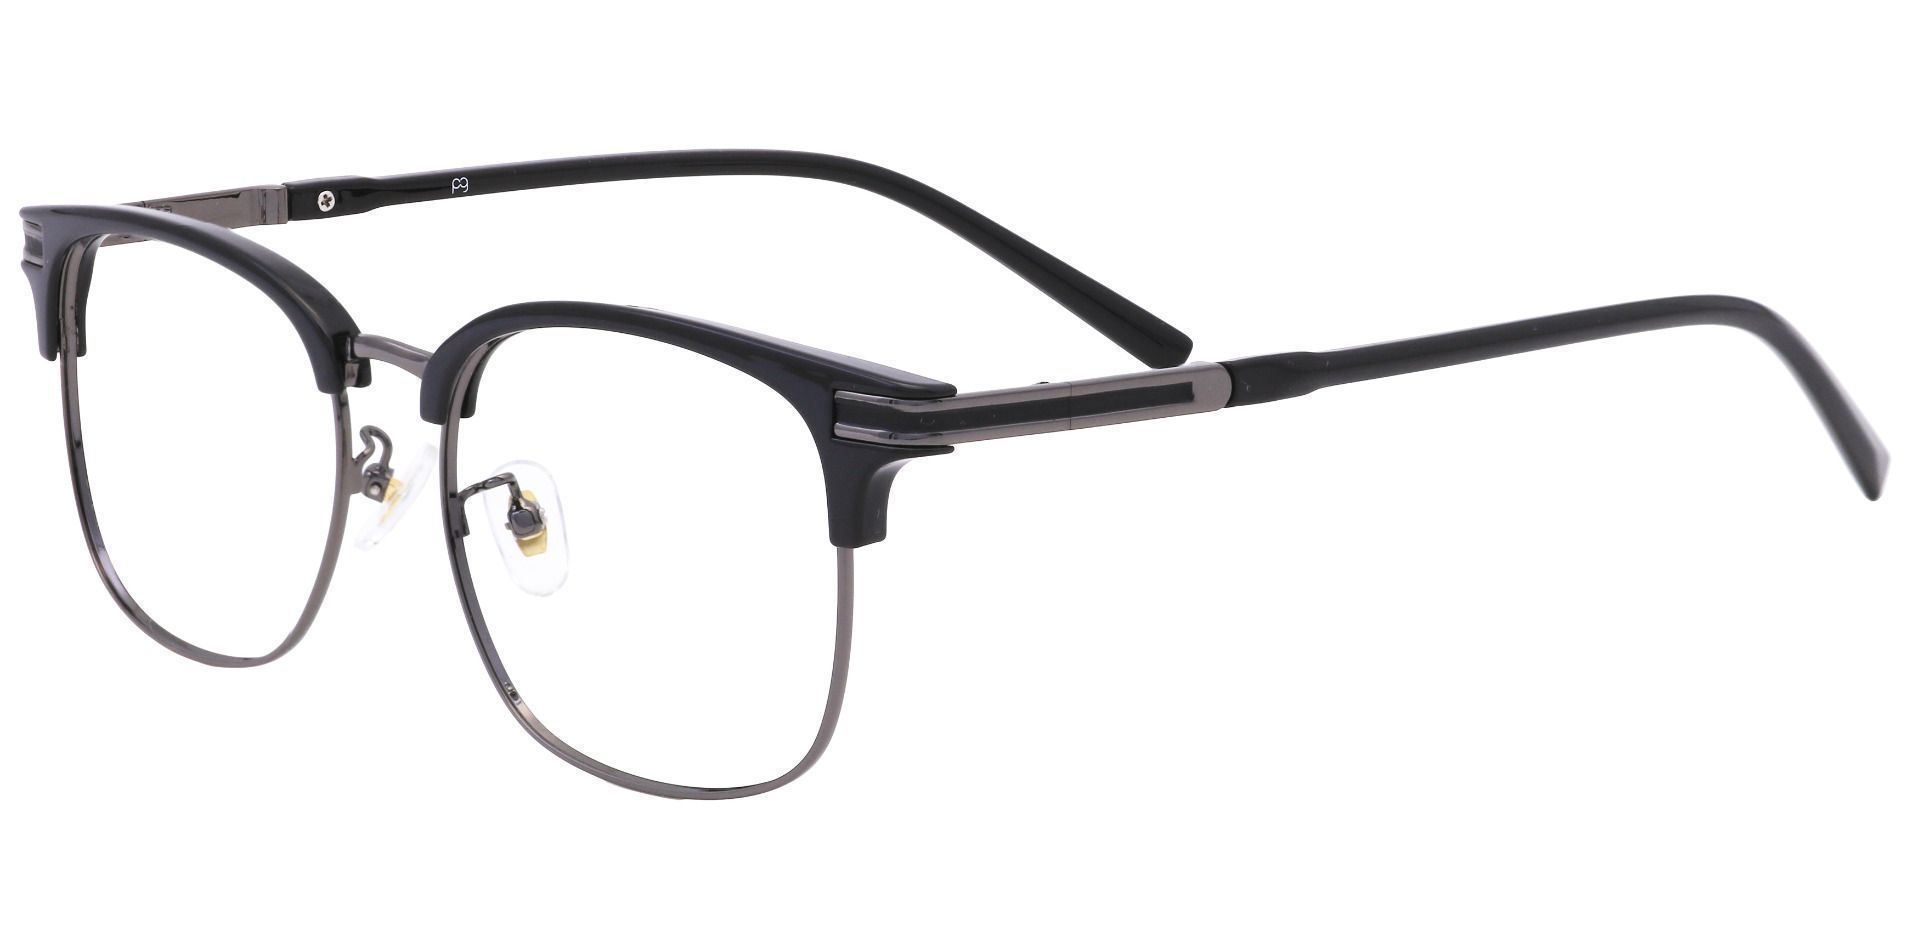 Cafe Browline Lined Bifocal Glasses - Black